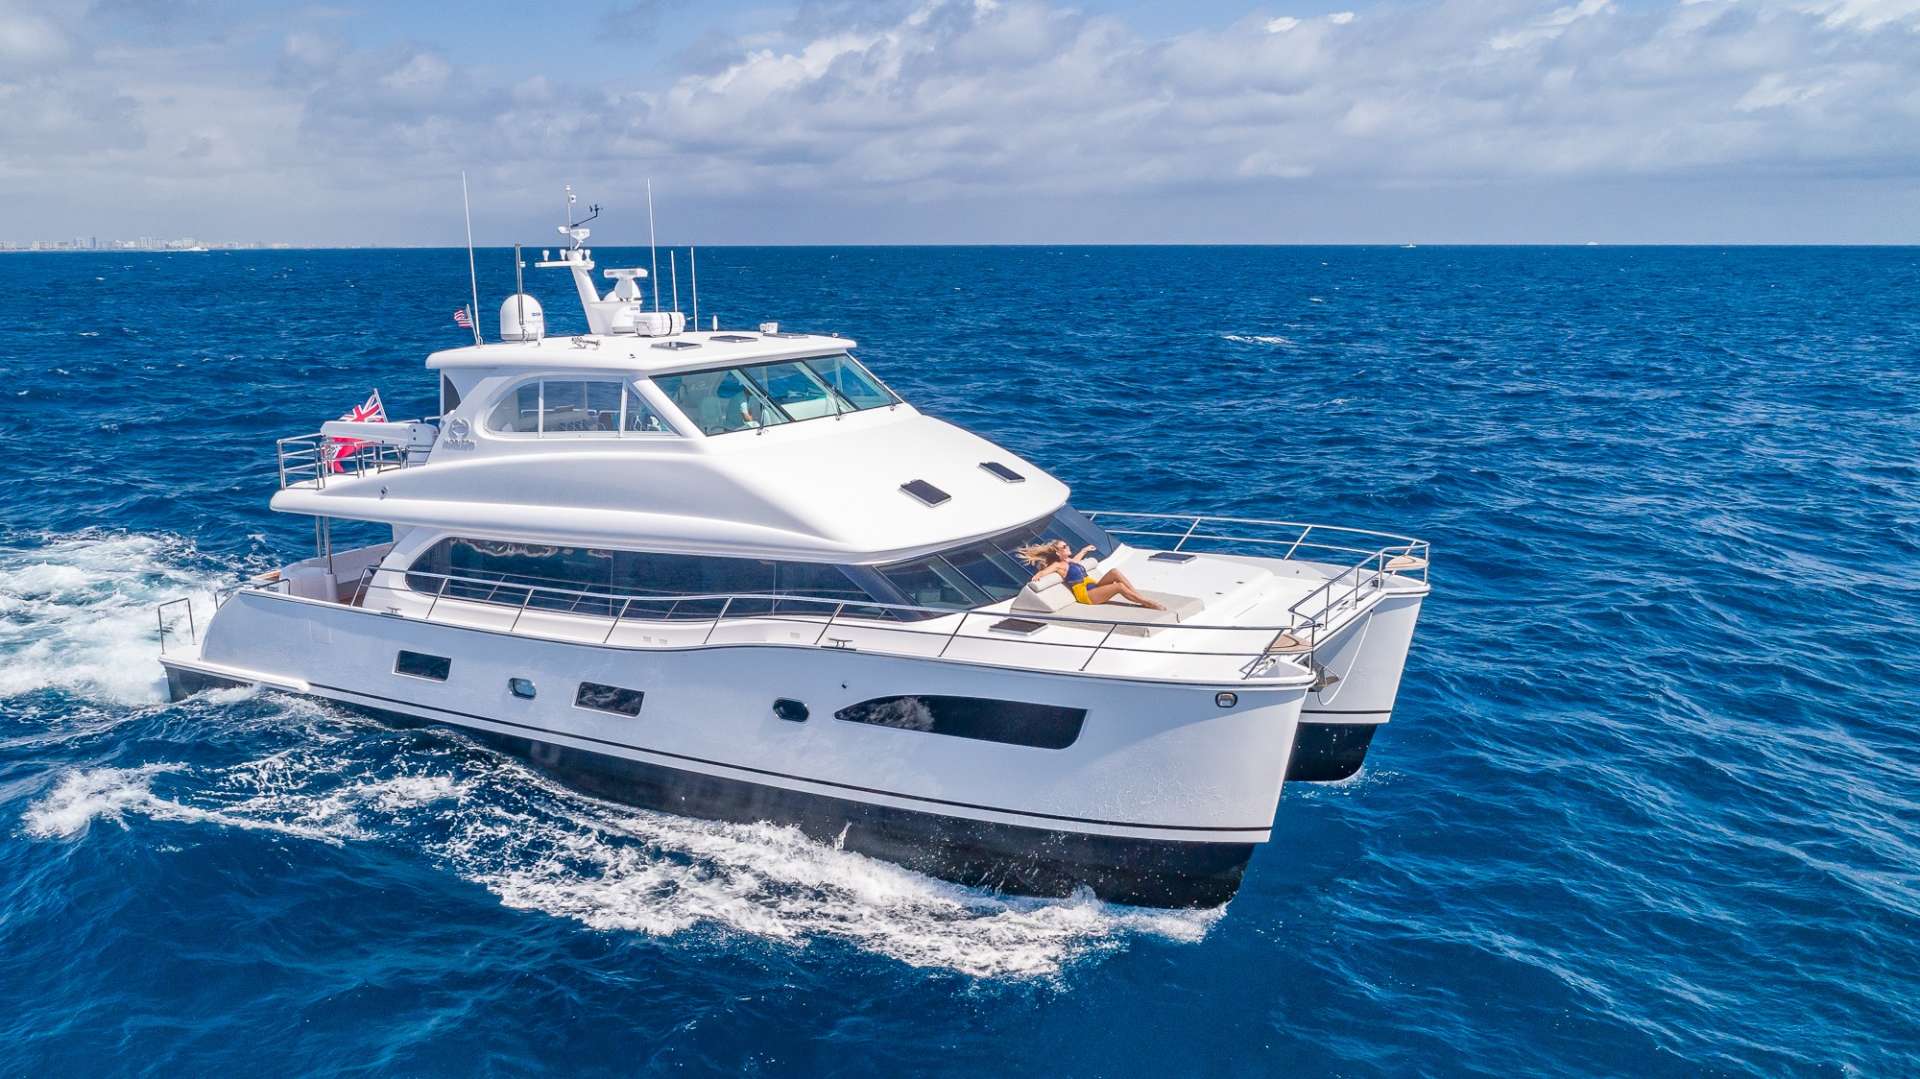 Motor Yacht 'MUCHO GUSTO', 6 PAX, 2 Crew, 65.00 Ft, 19.00 Meters, Built 2019, Horizon